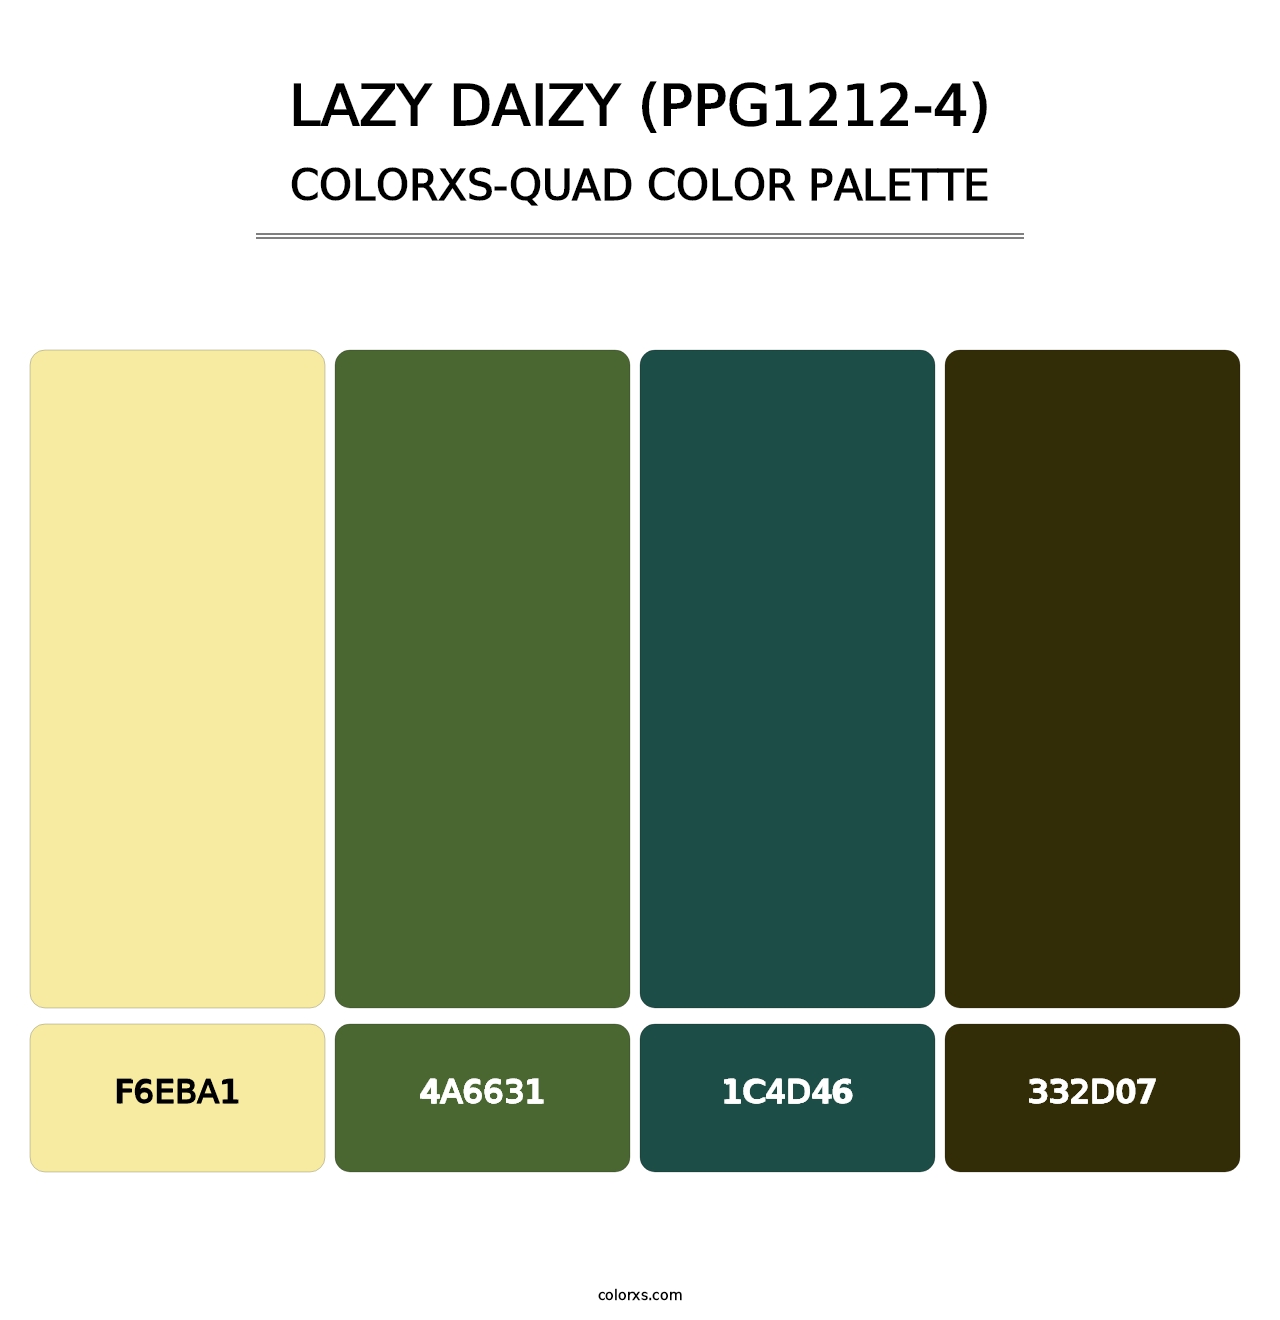 Lazy Daizy (PPG1212-4) - Colorxs Quad Palette